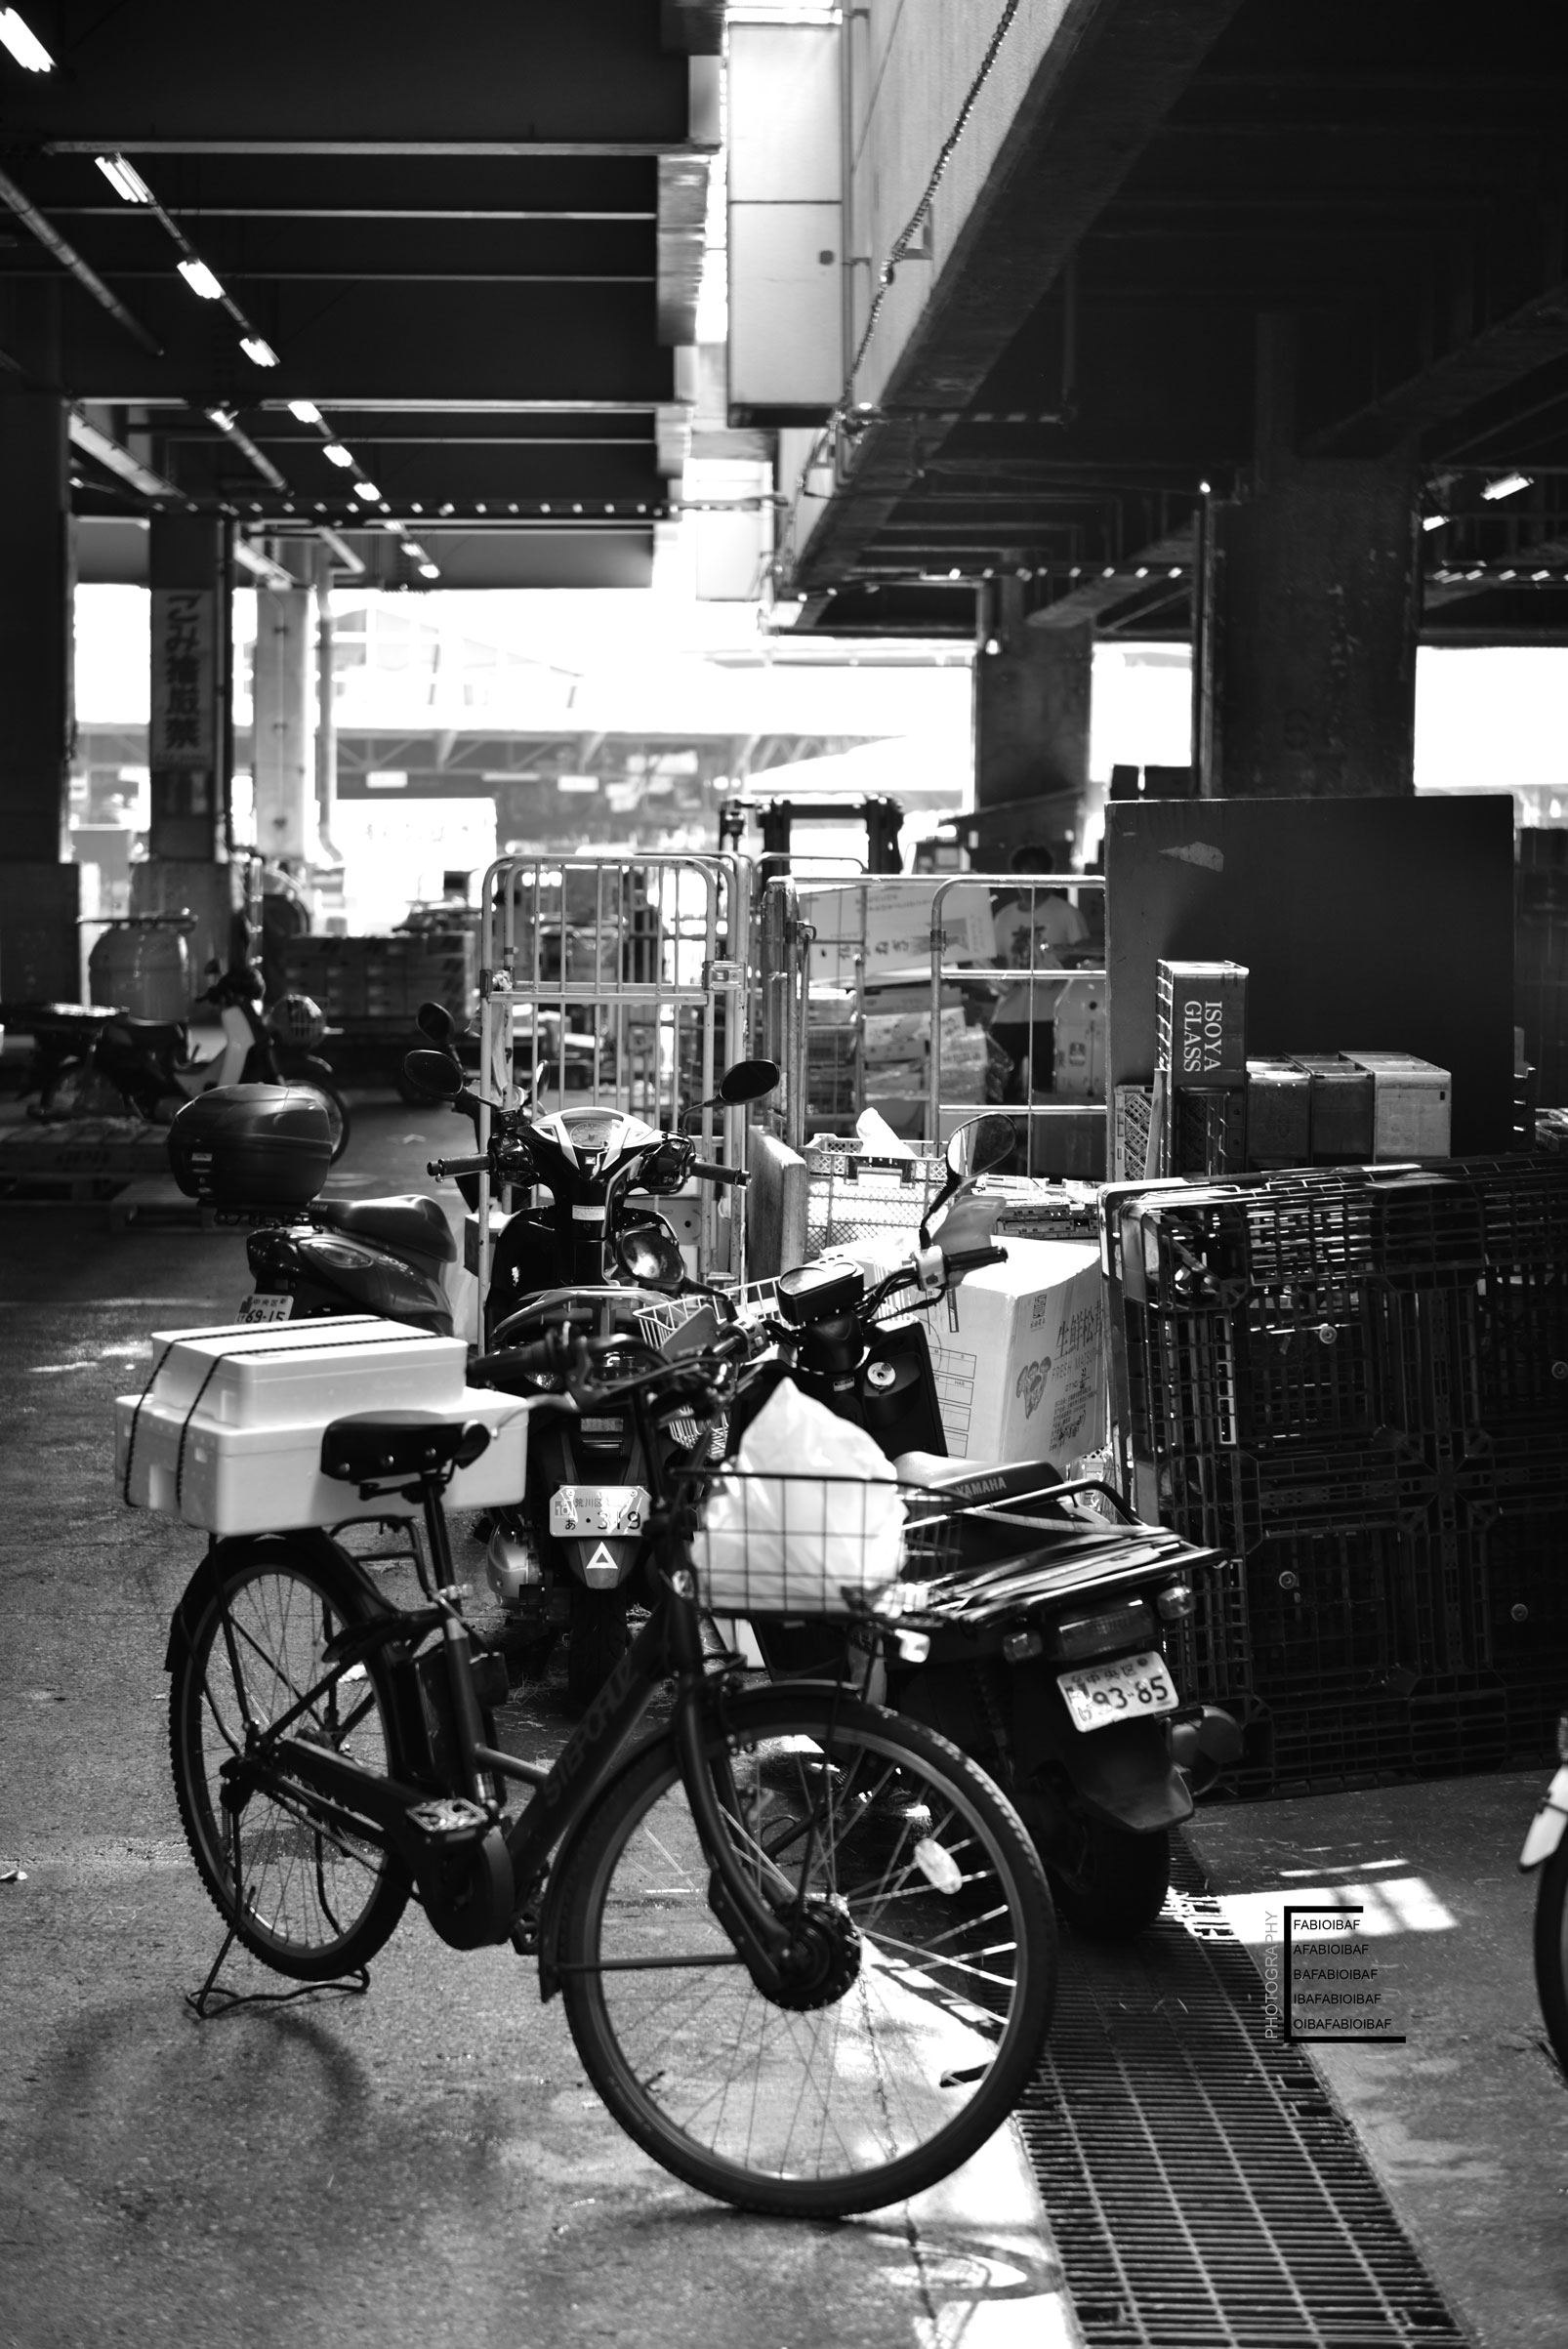 tokyo---Fmarket---bike-truck-bw.jpg